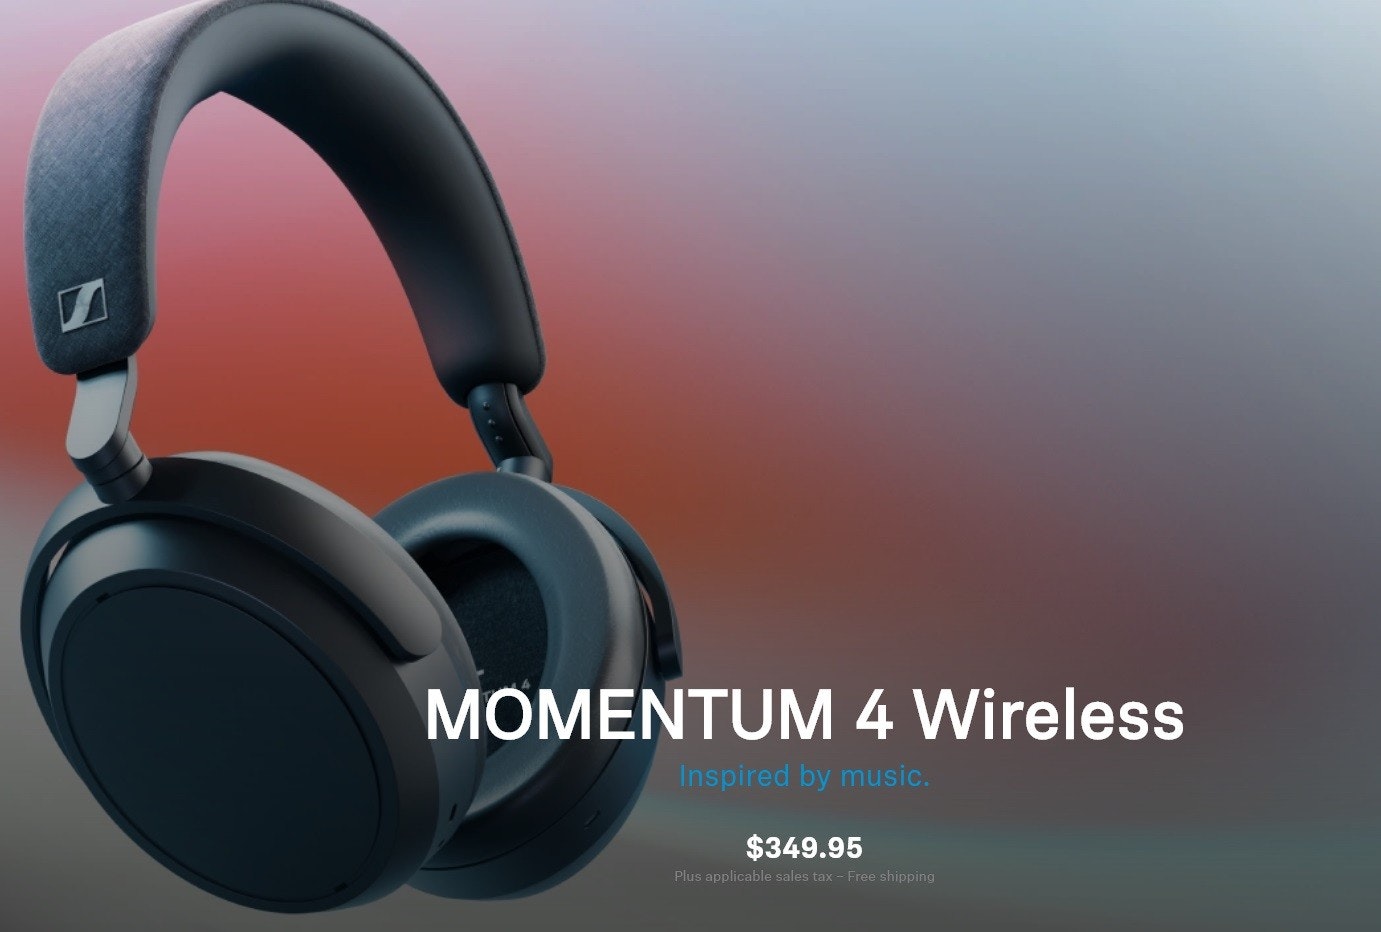 照片中提到了MOMENTUM 4 Wireless、Inspired by music.、$349.95，包含了頭戴式耳機、頭戴式耳機、產品設計、音響器材、牌